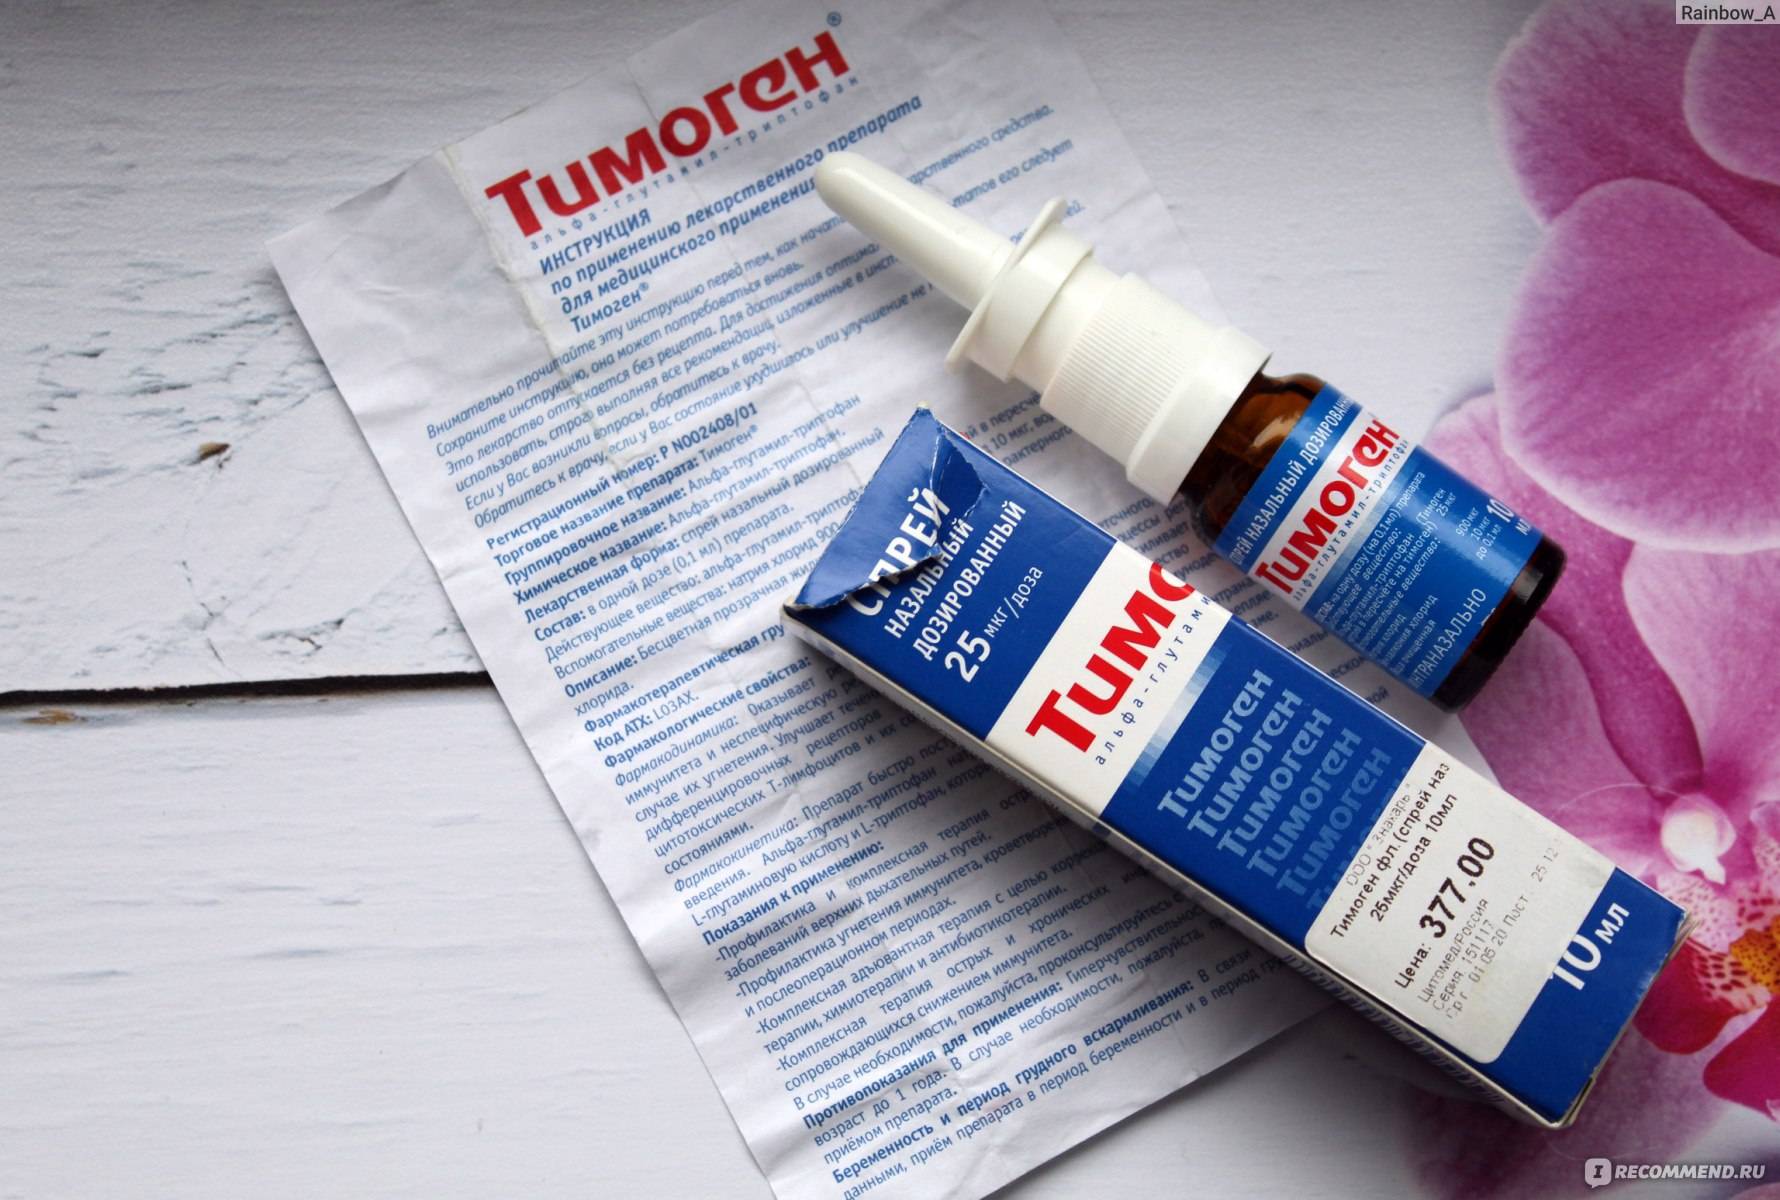 Тимоген — инструкция по применению, описание, вопросы по препарату